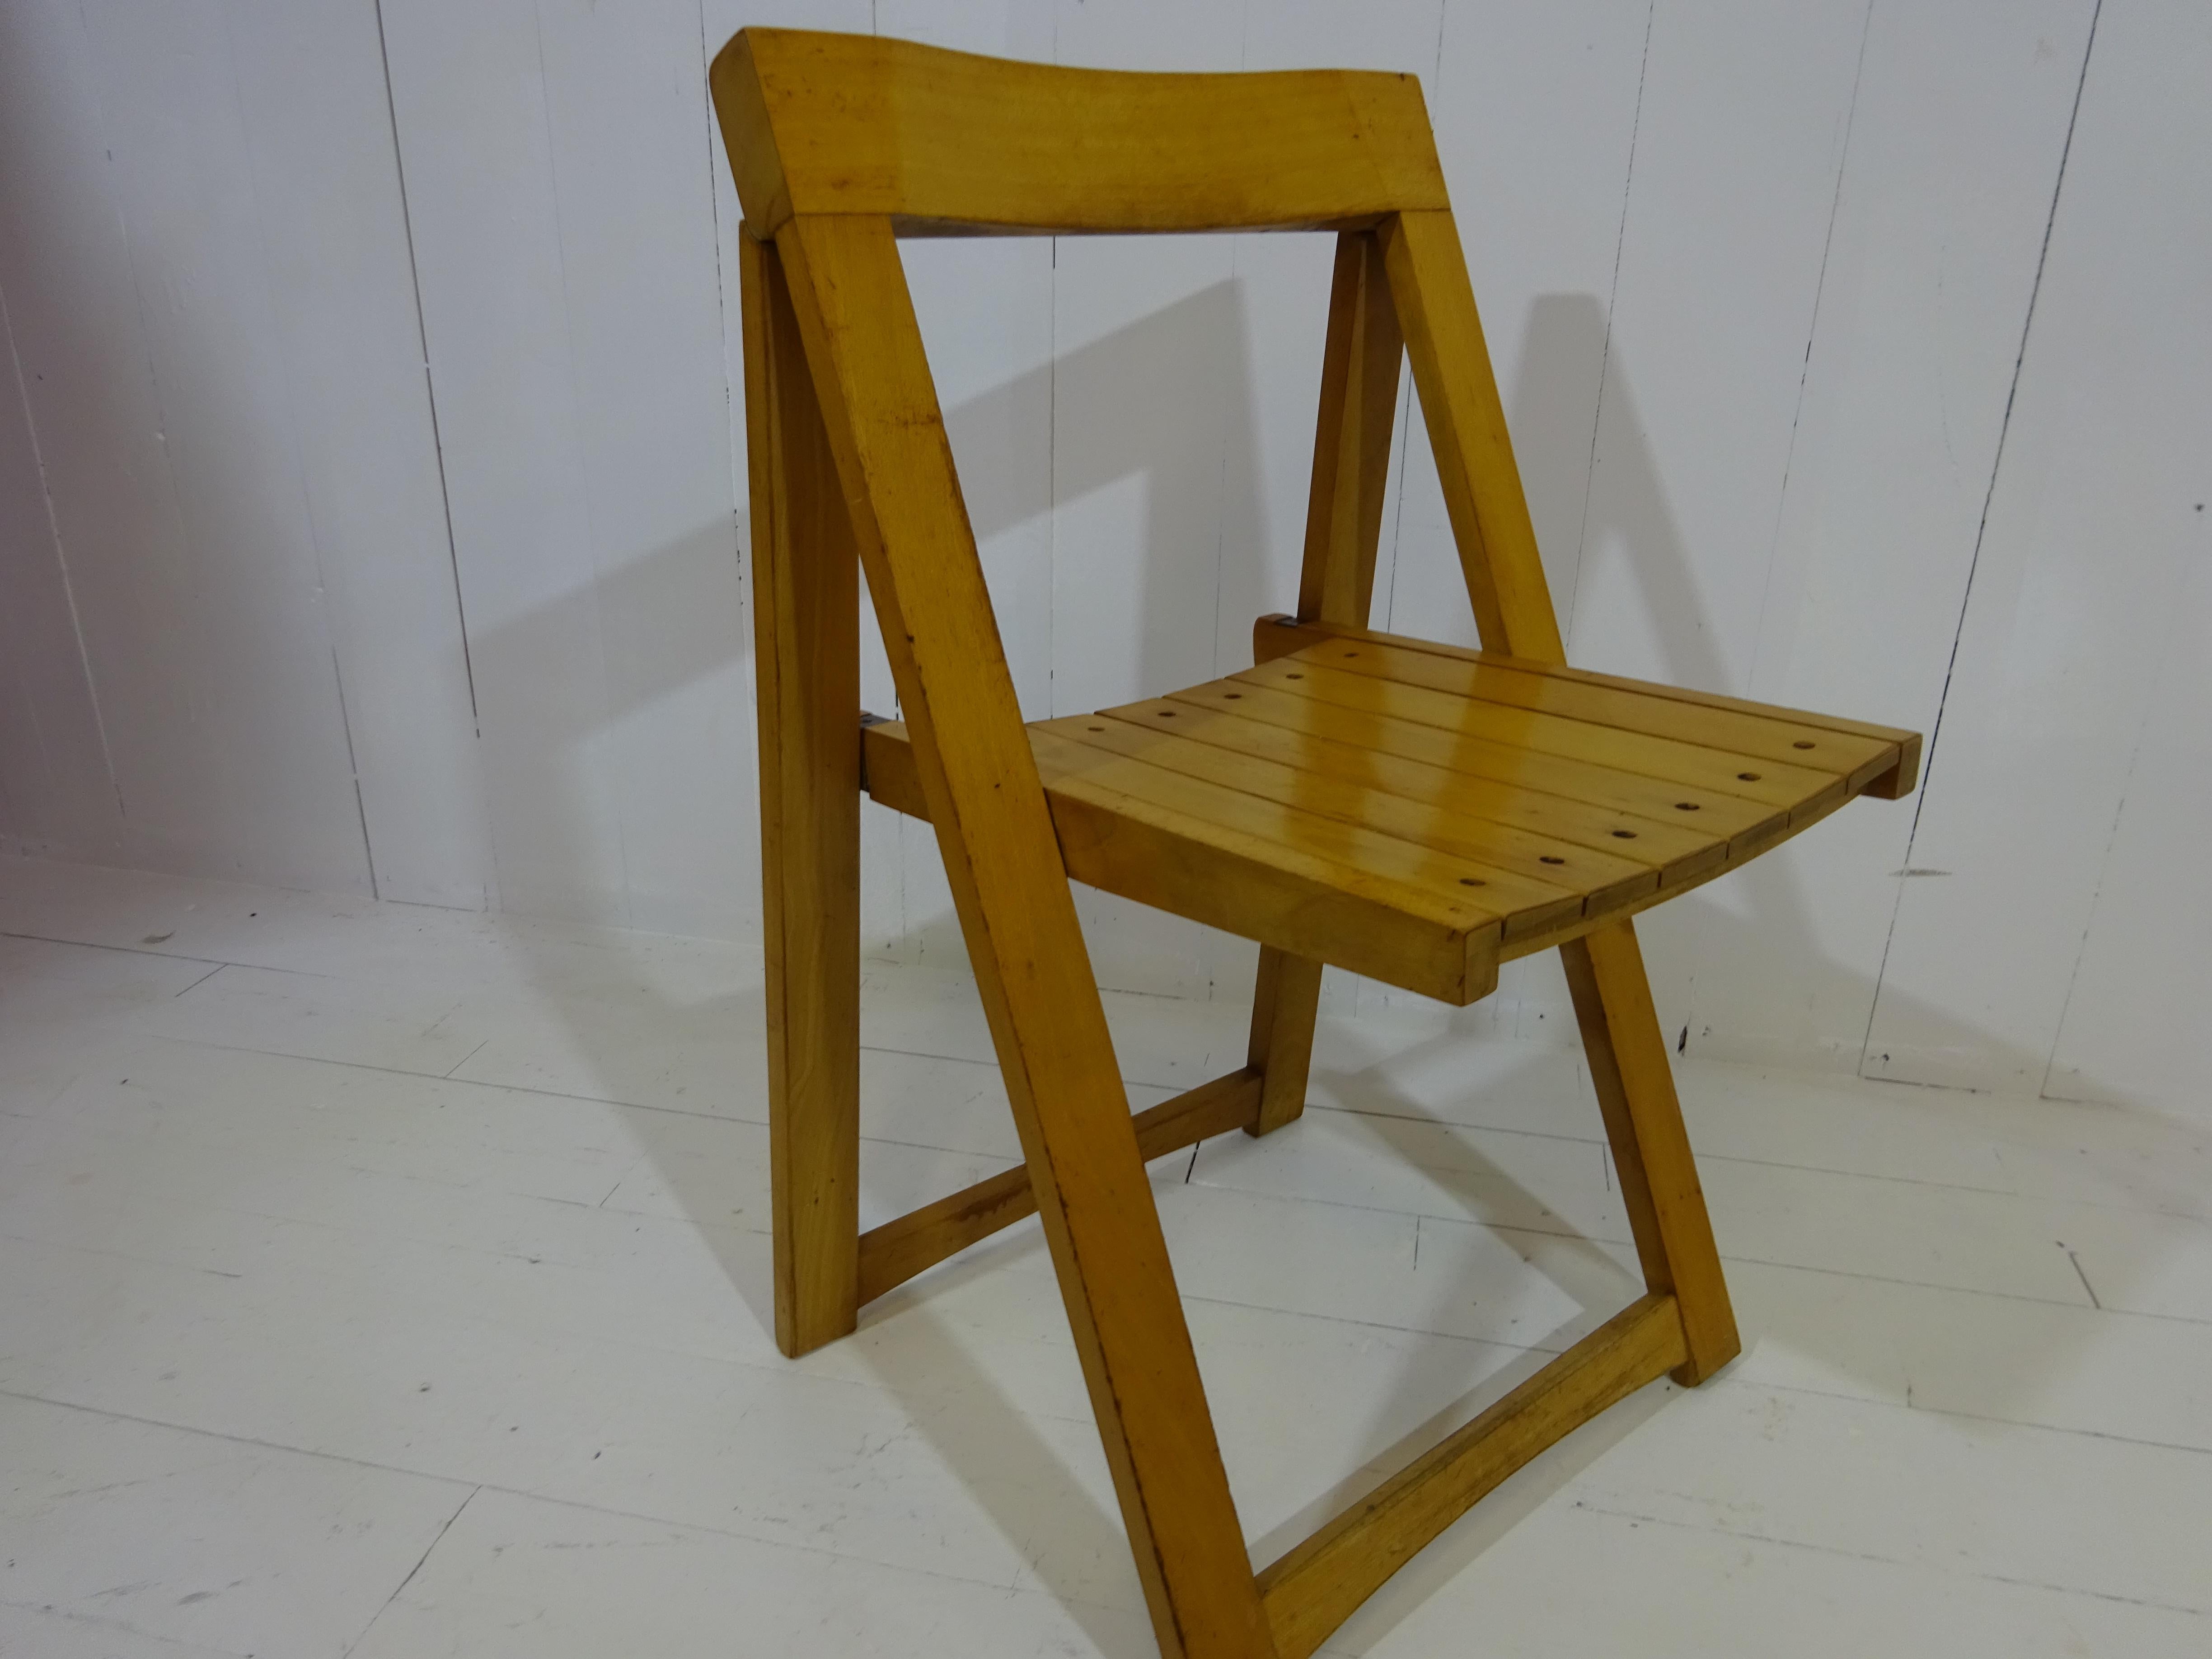 Faltbarer Stuhl von Aldo Jacober 

Eine Design-Ikone aus den 1960er Jahren! 

Klappstuhl nach italienischem Design von Aldo Jacober für Alberto Bazzani 1966. Er ist aus massiver Buche gefertigt, die schöne Patina des Holzes verleiht ihm